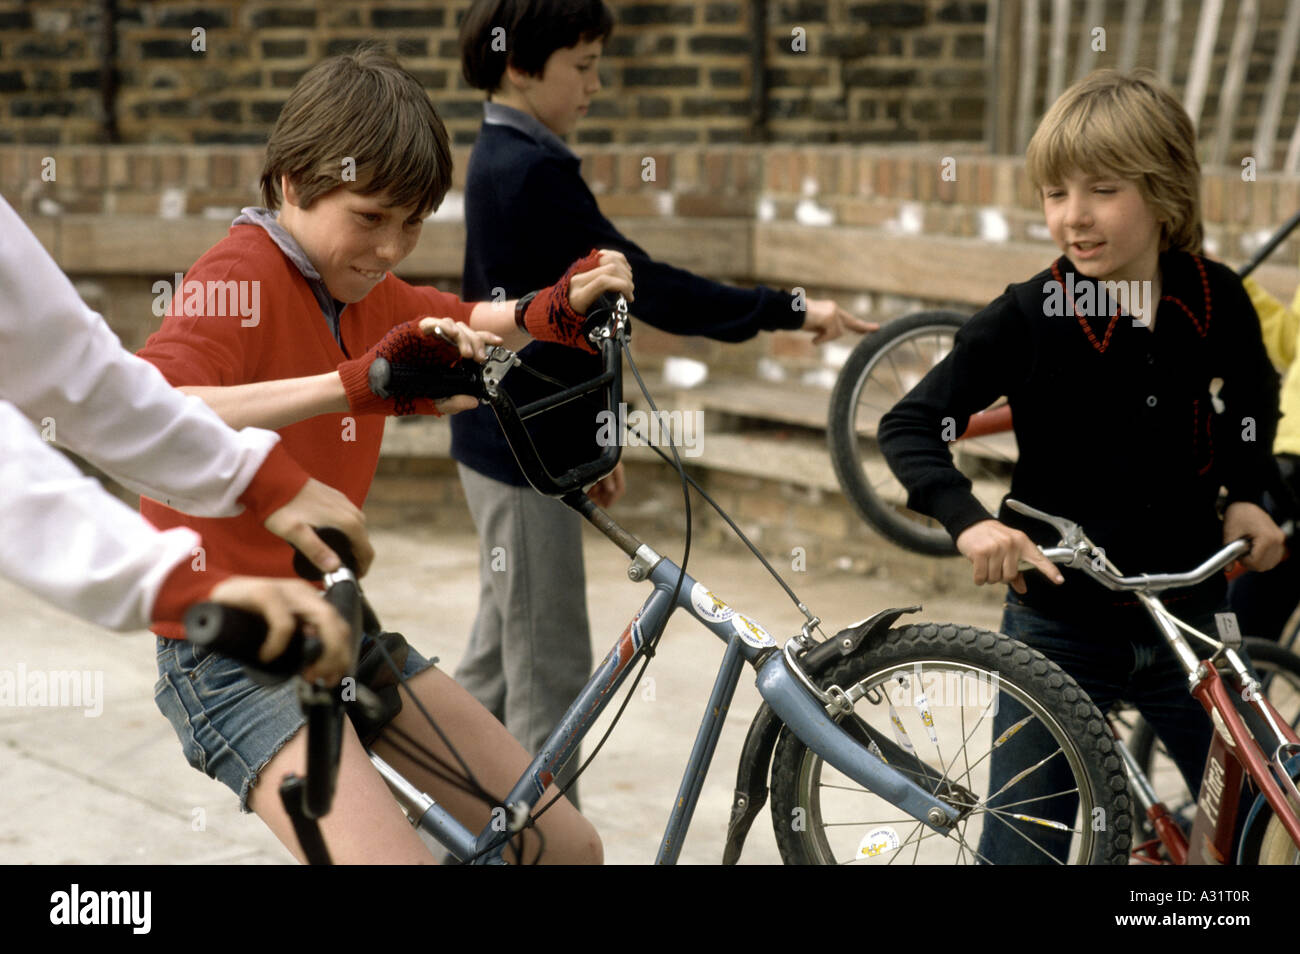 Imagen histórica de jóvenes en bicicletas en los setenta Foto de stock